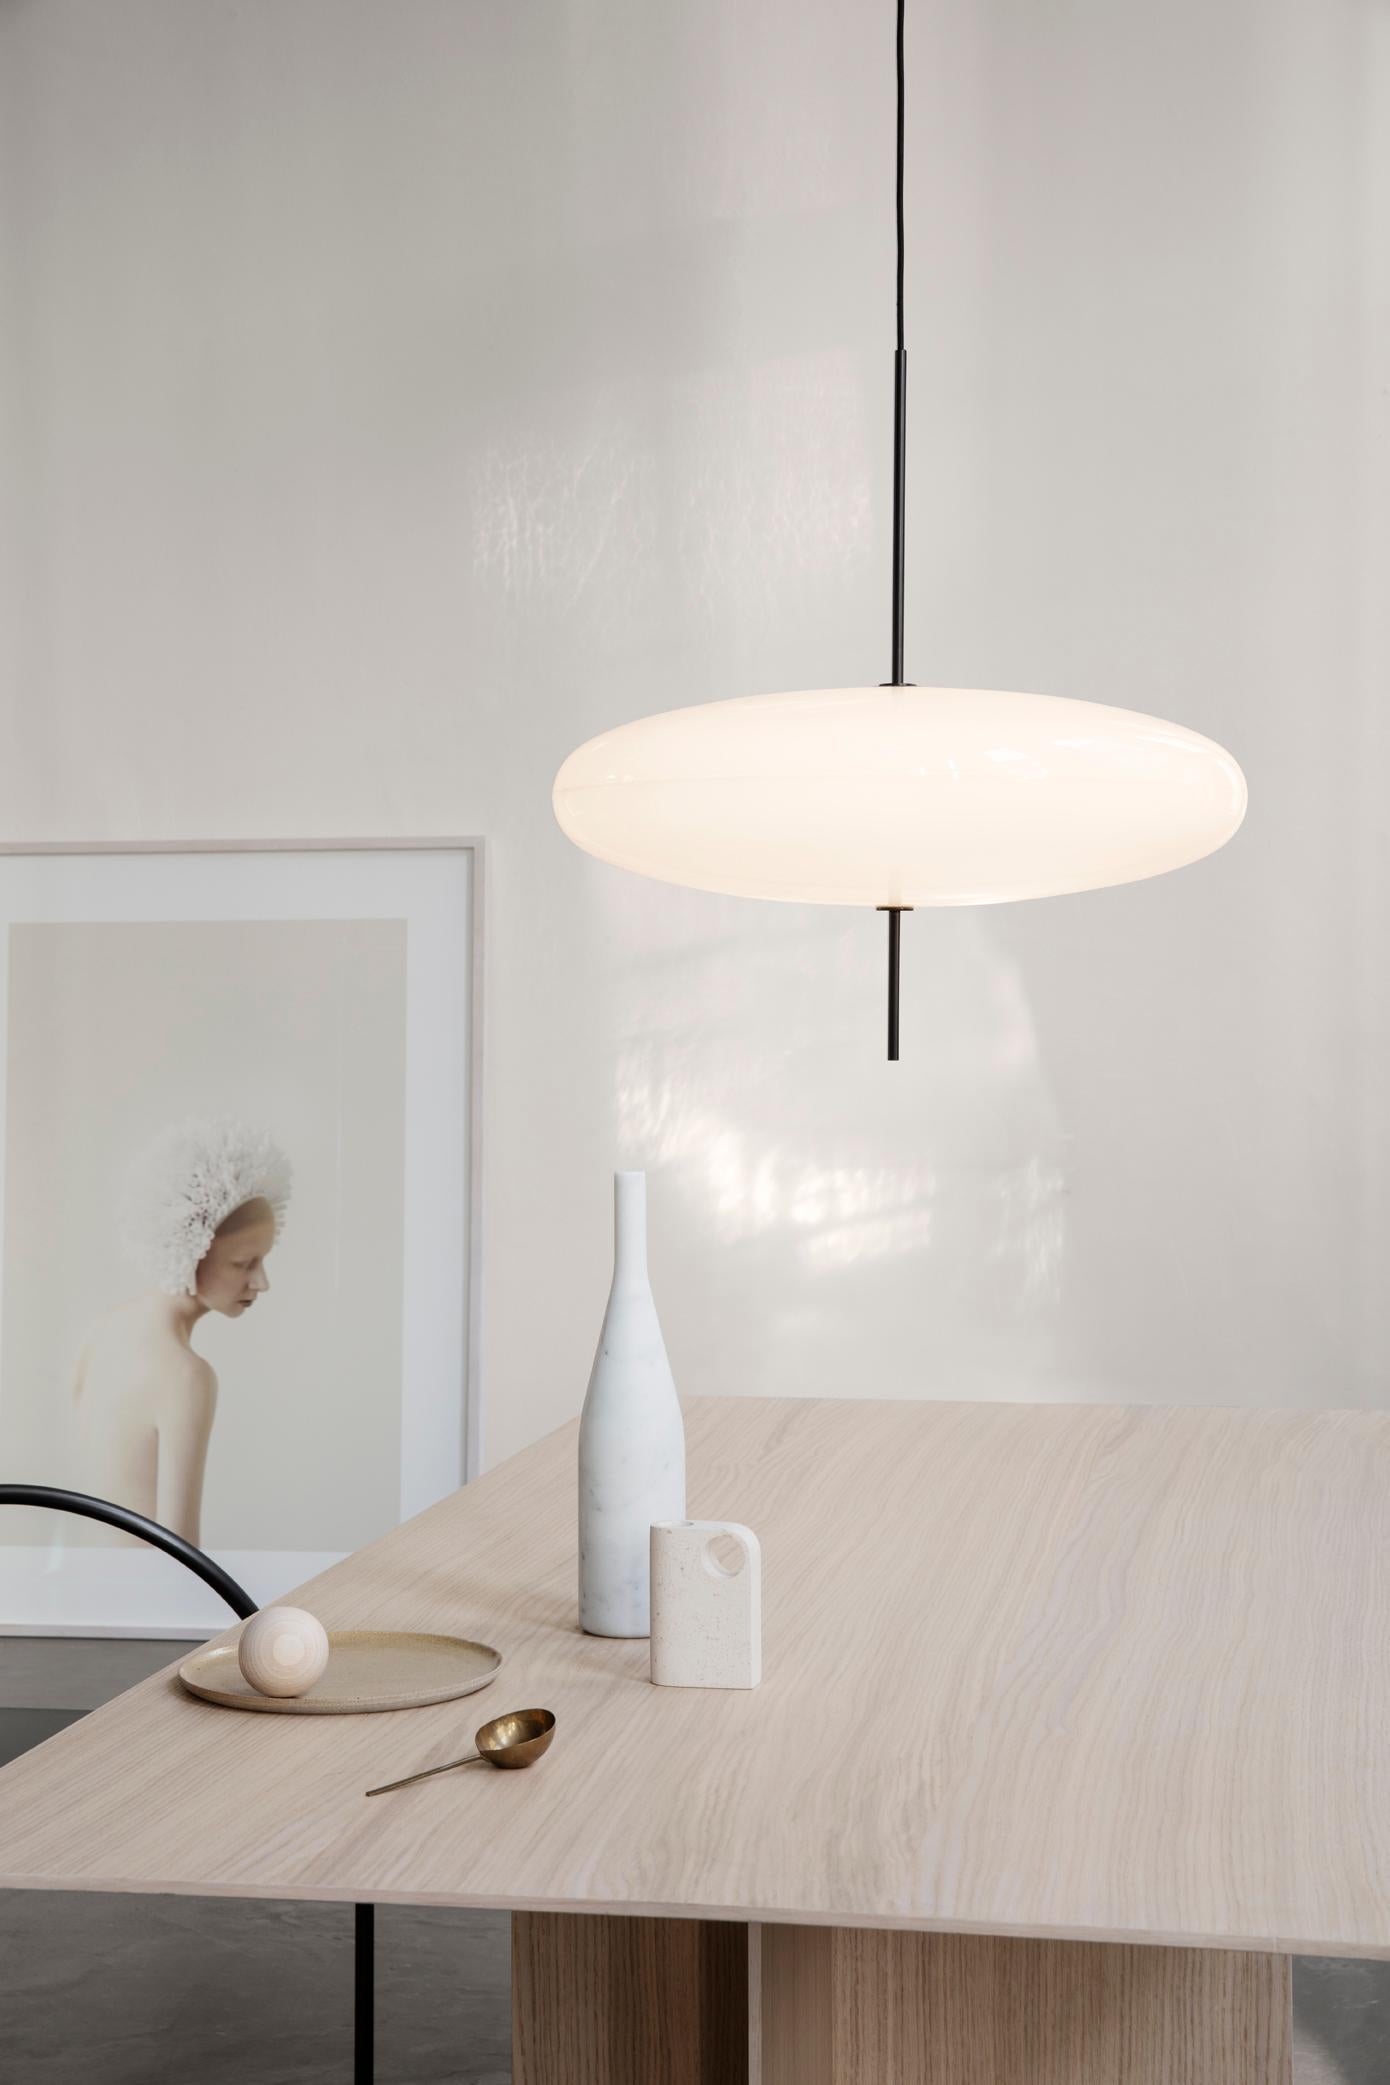 Gino Sarfatti Lamp Model 2065 White Diffuser, Black Hardware, for Astep 2